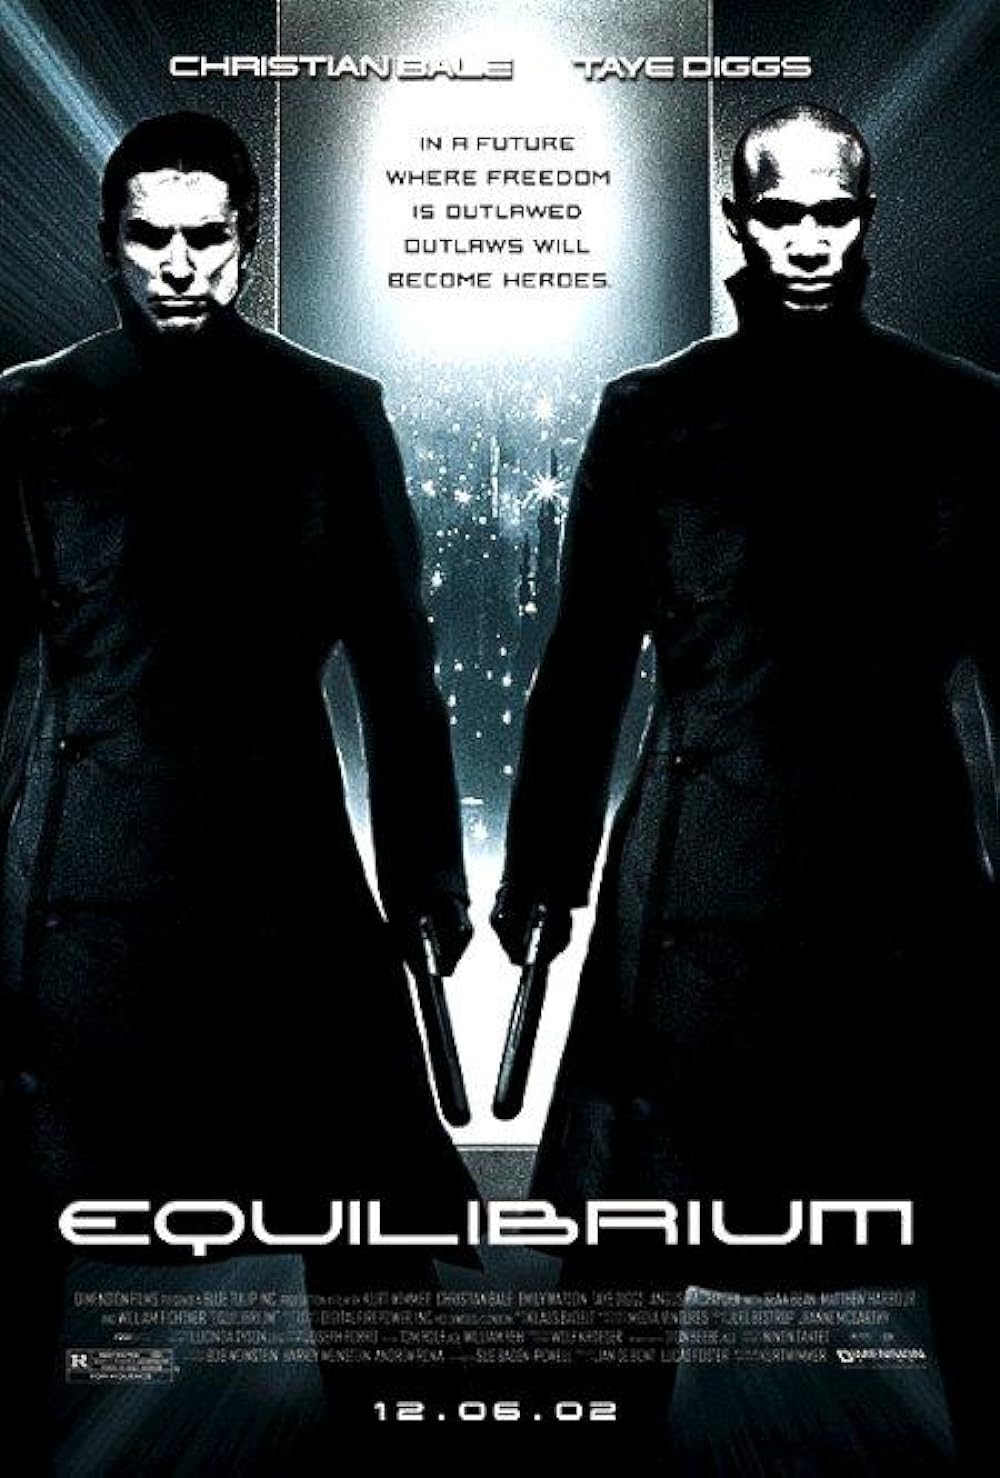 FULL MOVIE: Equilibrium (2002)